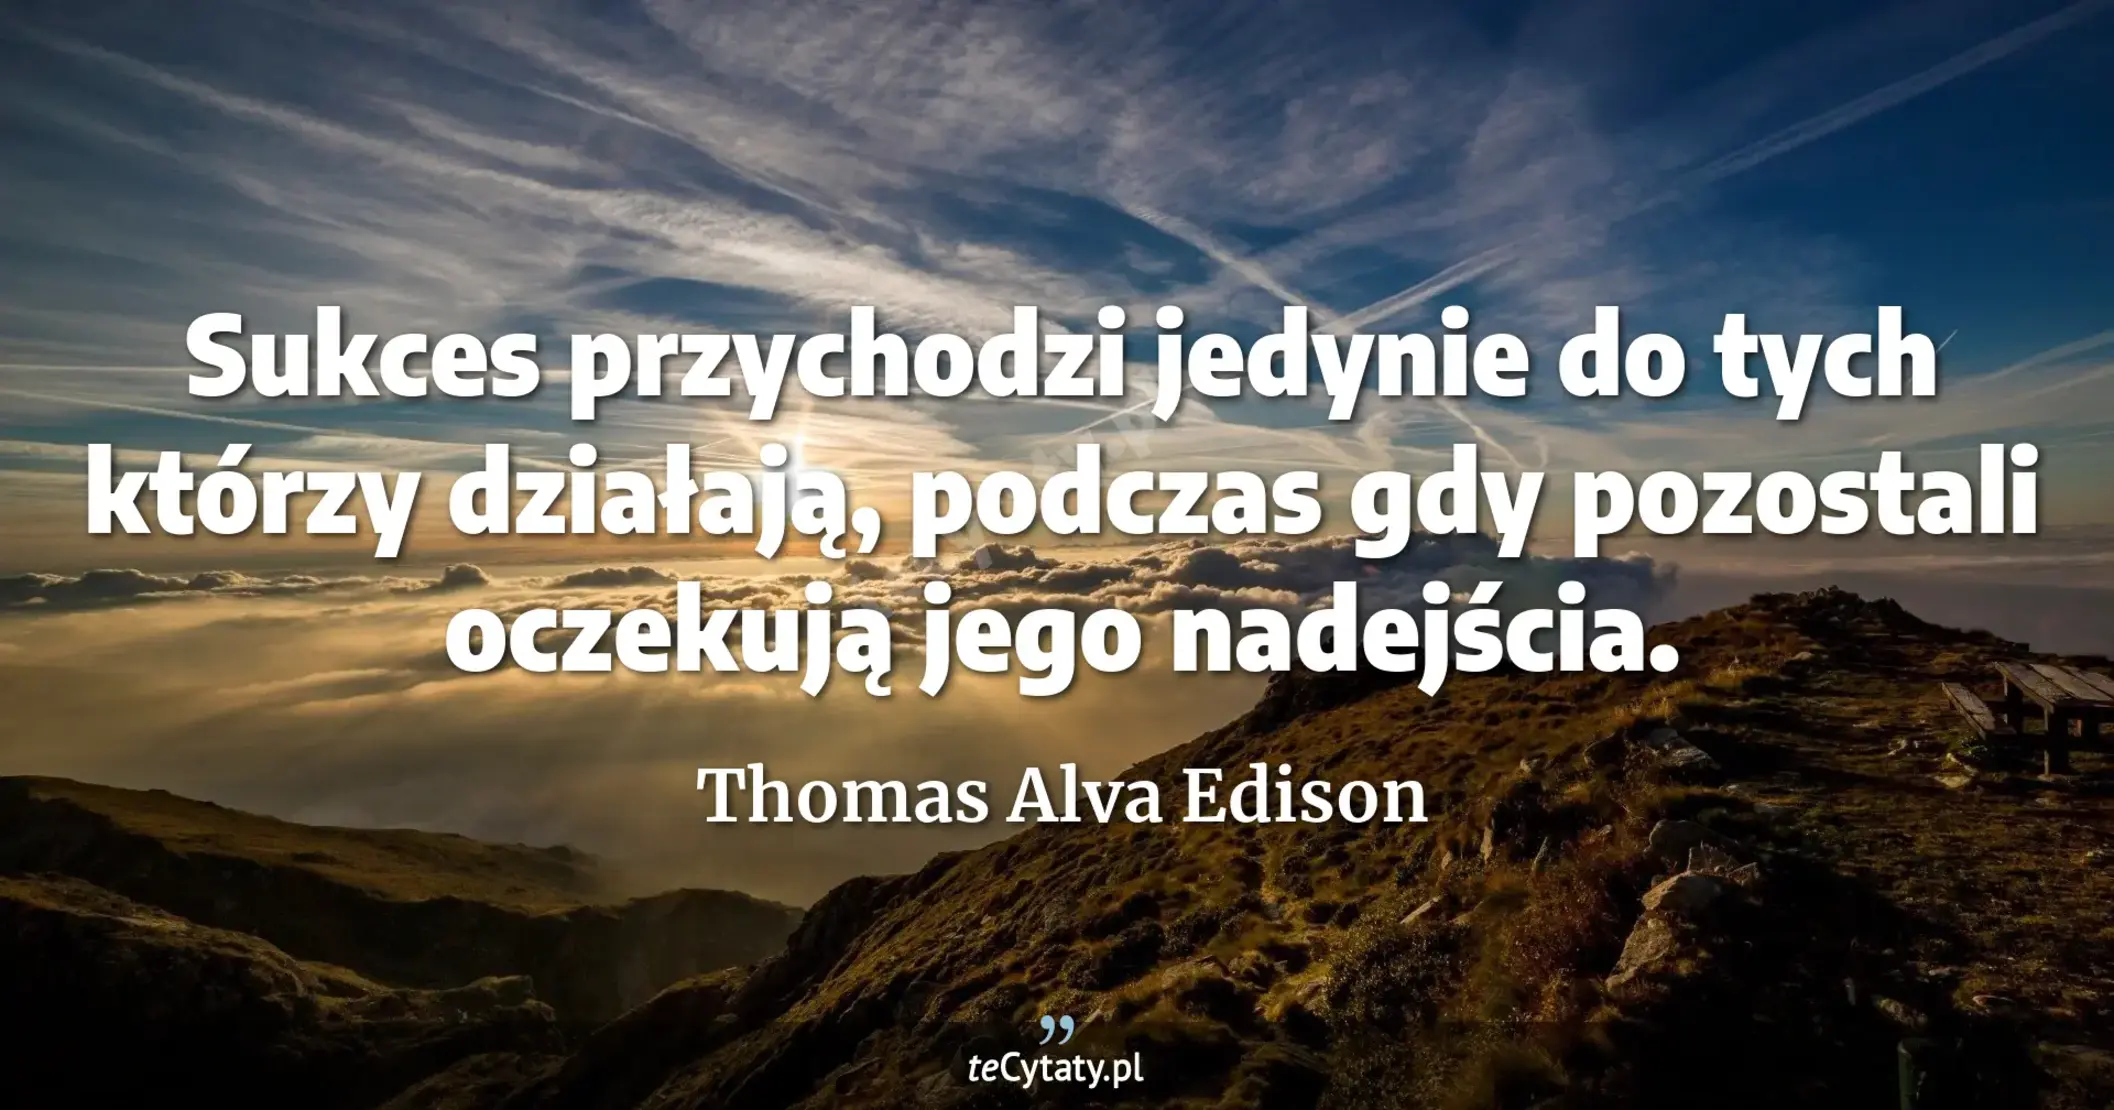 Sukces przychodzi jedynie do tych którzy działają, podczas gdy pozostali oczekują jego nadejścia. - Thomas Alva Edison